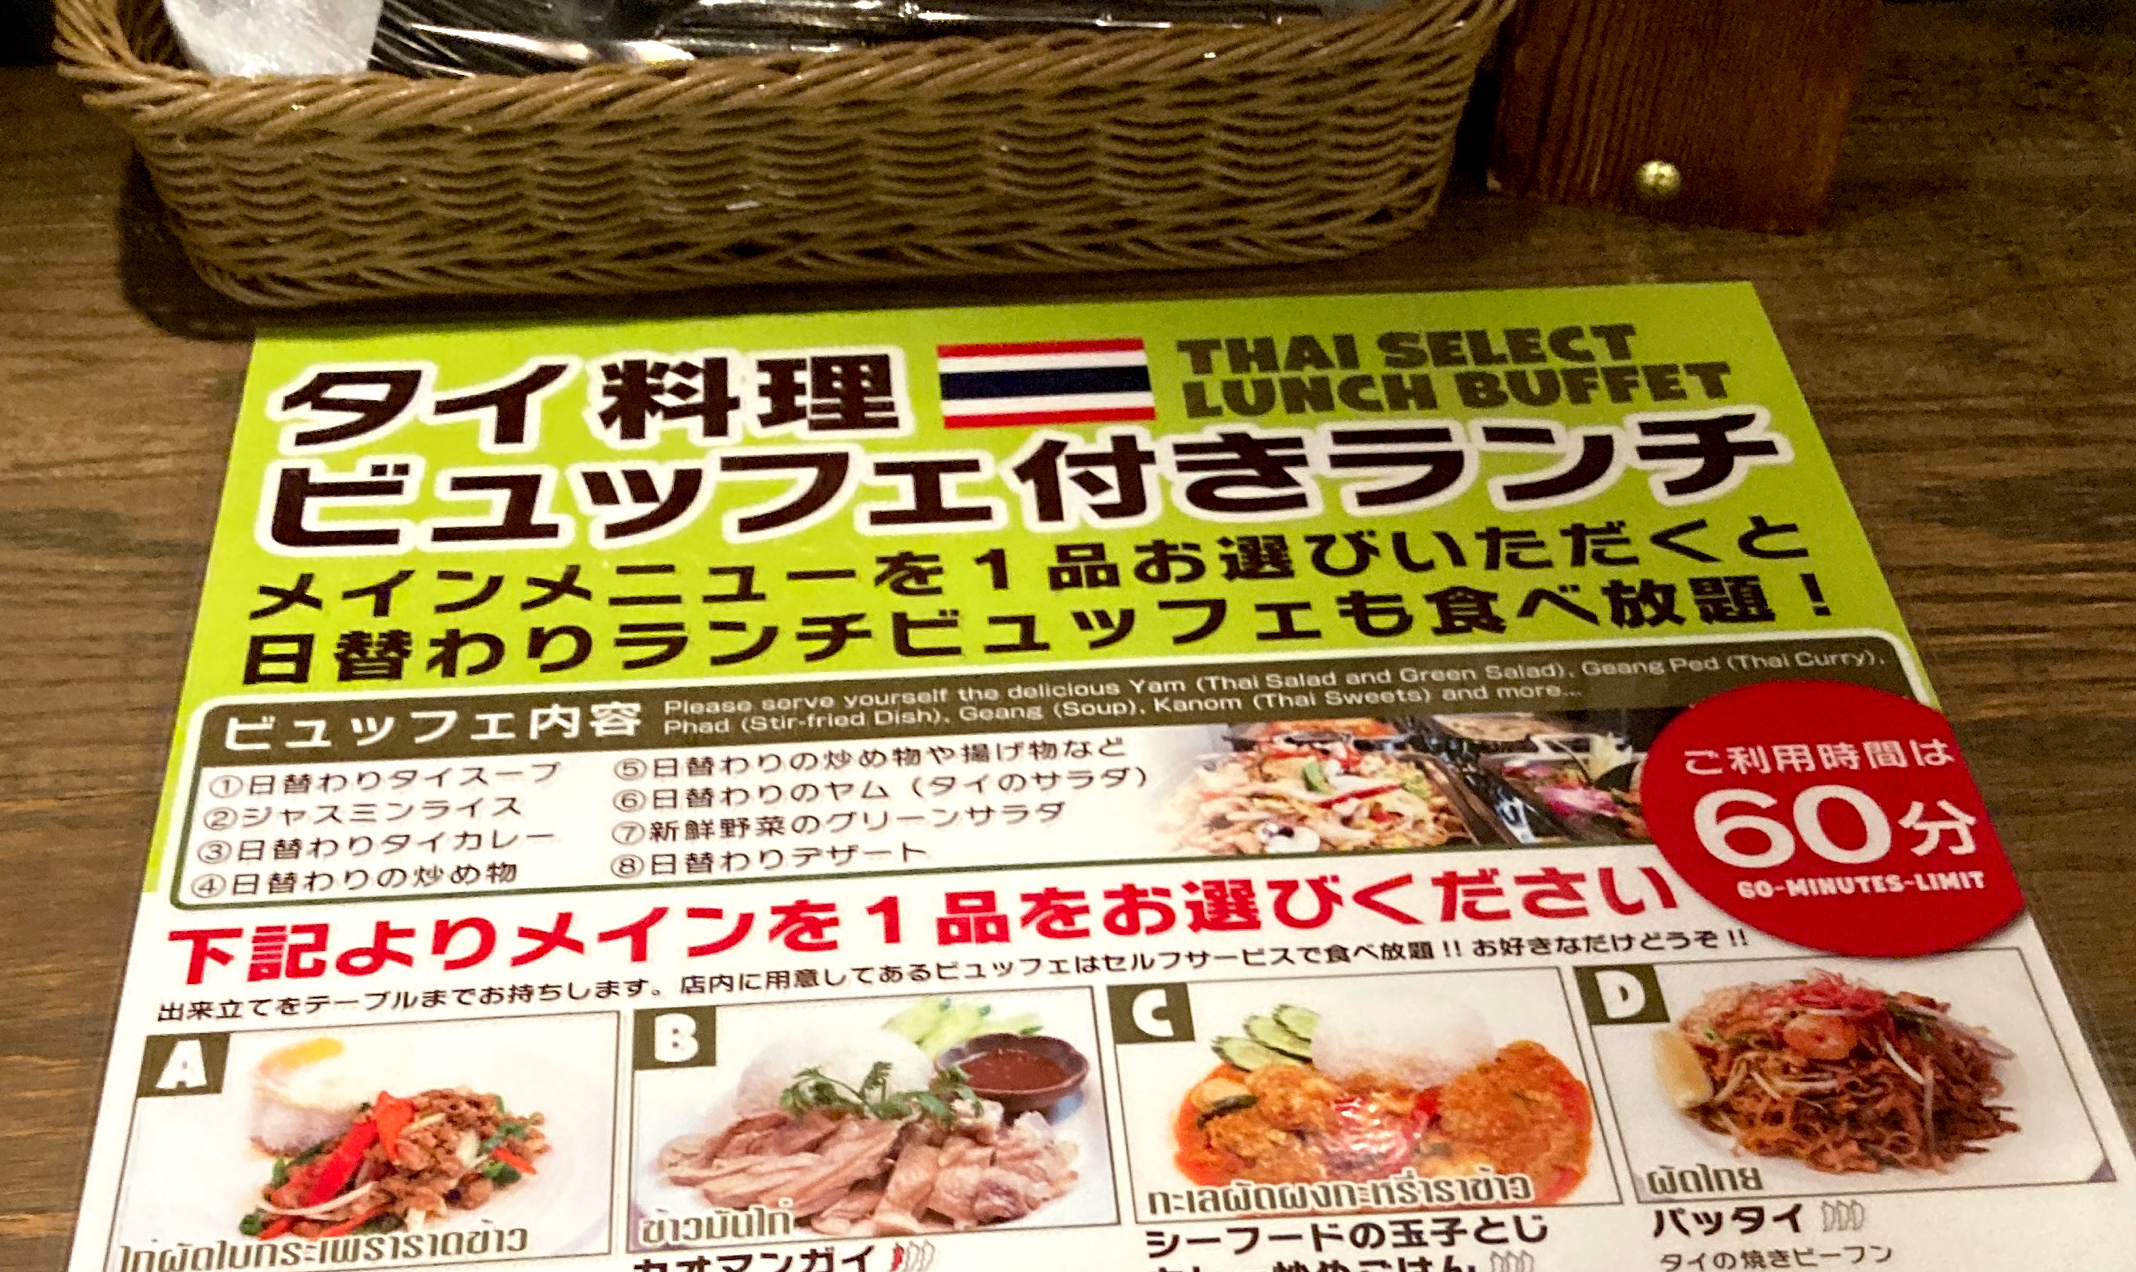 タイレストラン スクンビットソイ55 のビュッフェ付きランチが 設定ミスか と思うほどお得だった 東京 西新宿 ロケットニュース24